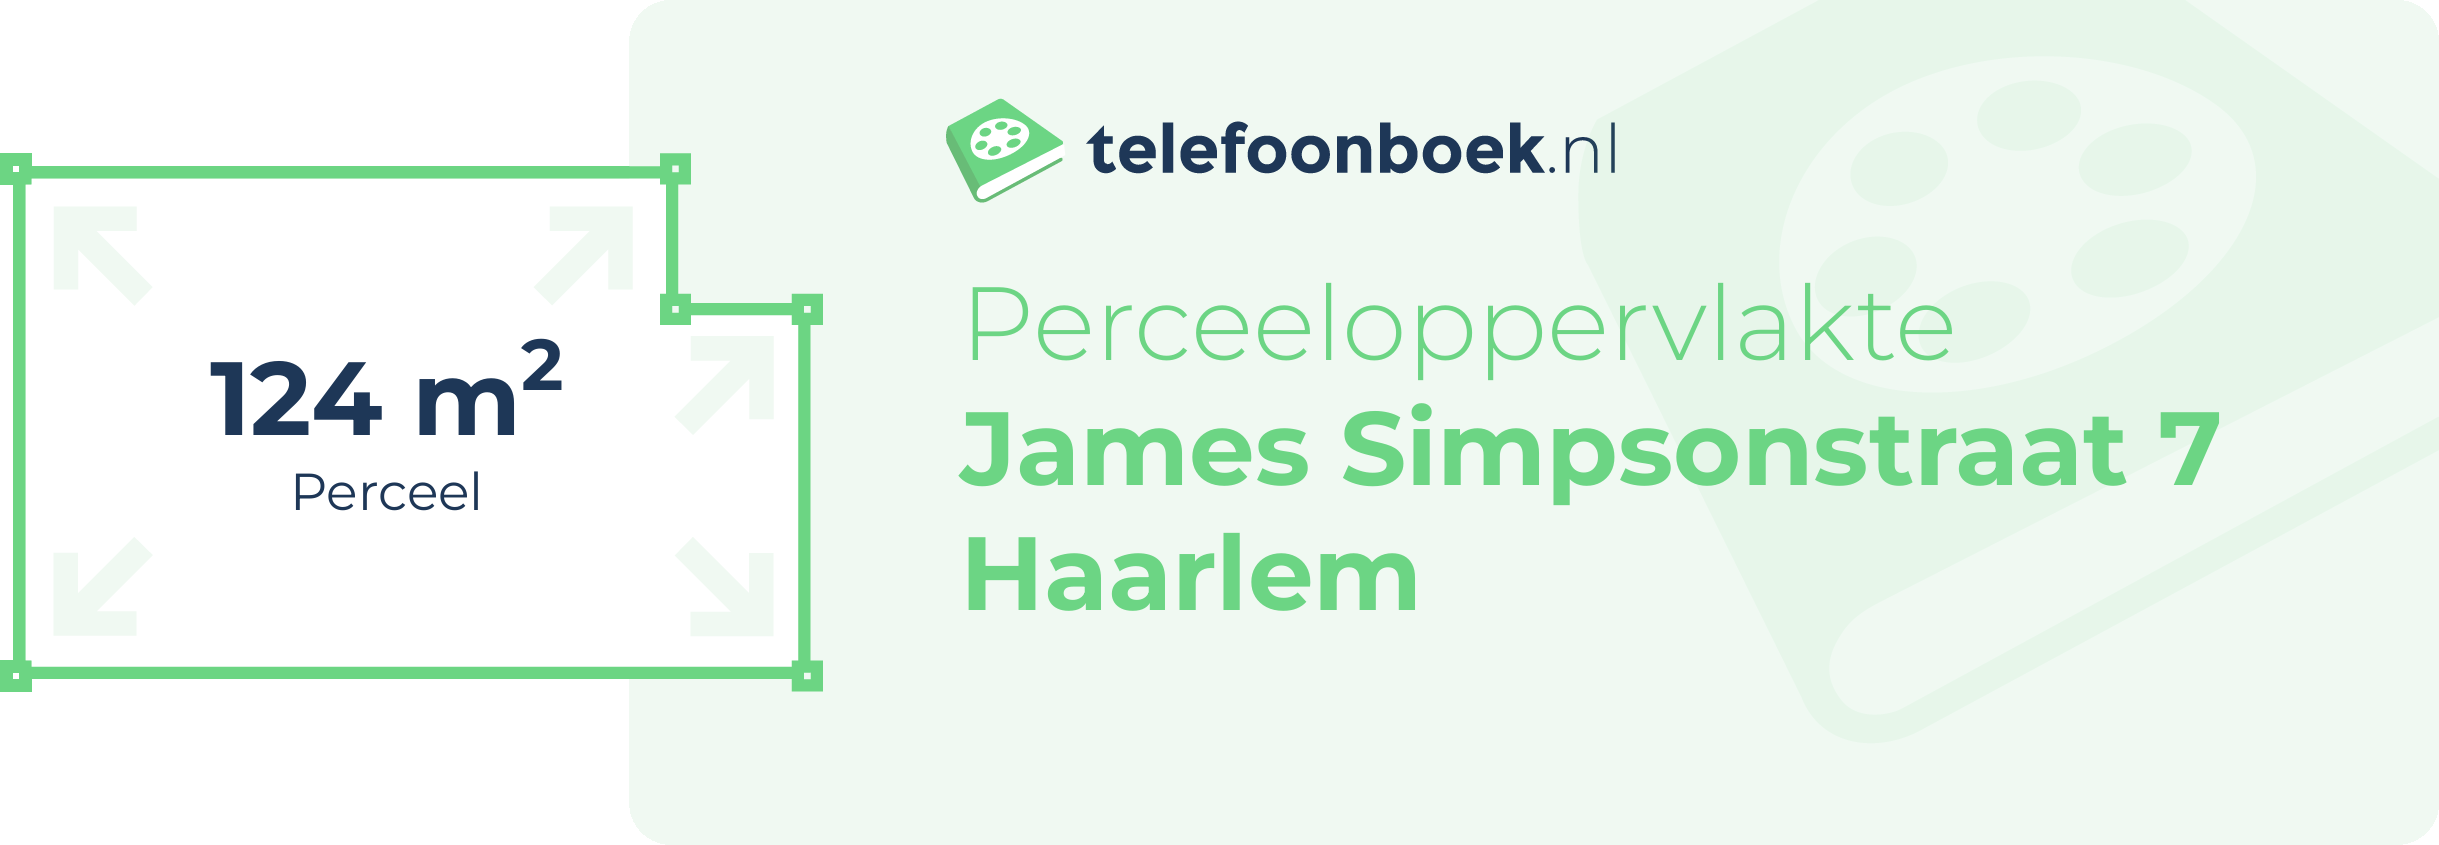 Perceeloppervlakte James Simpsonstraat 7 Haarlem